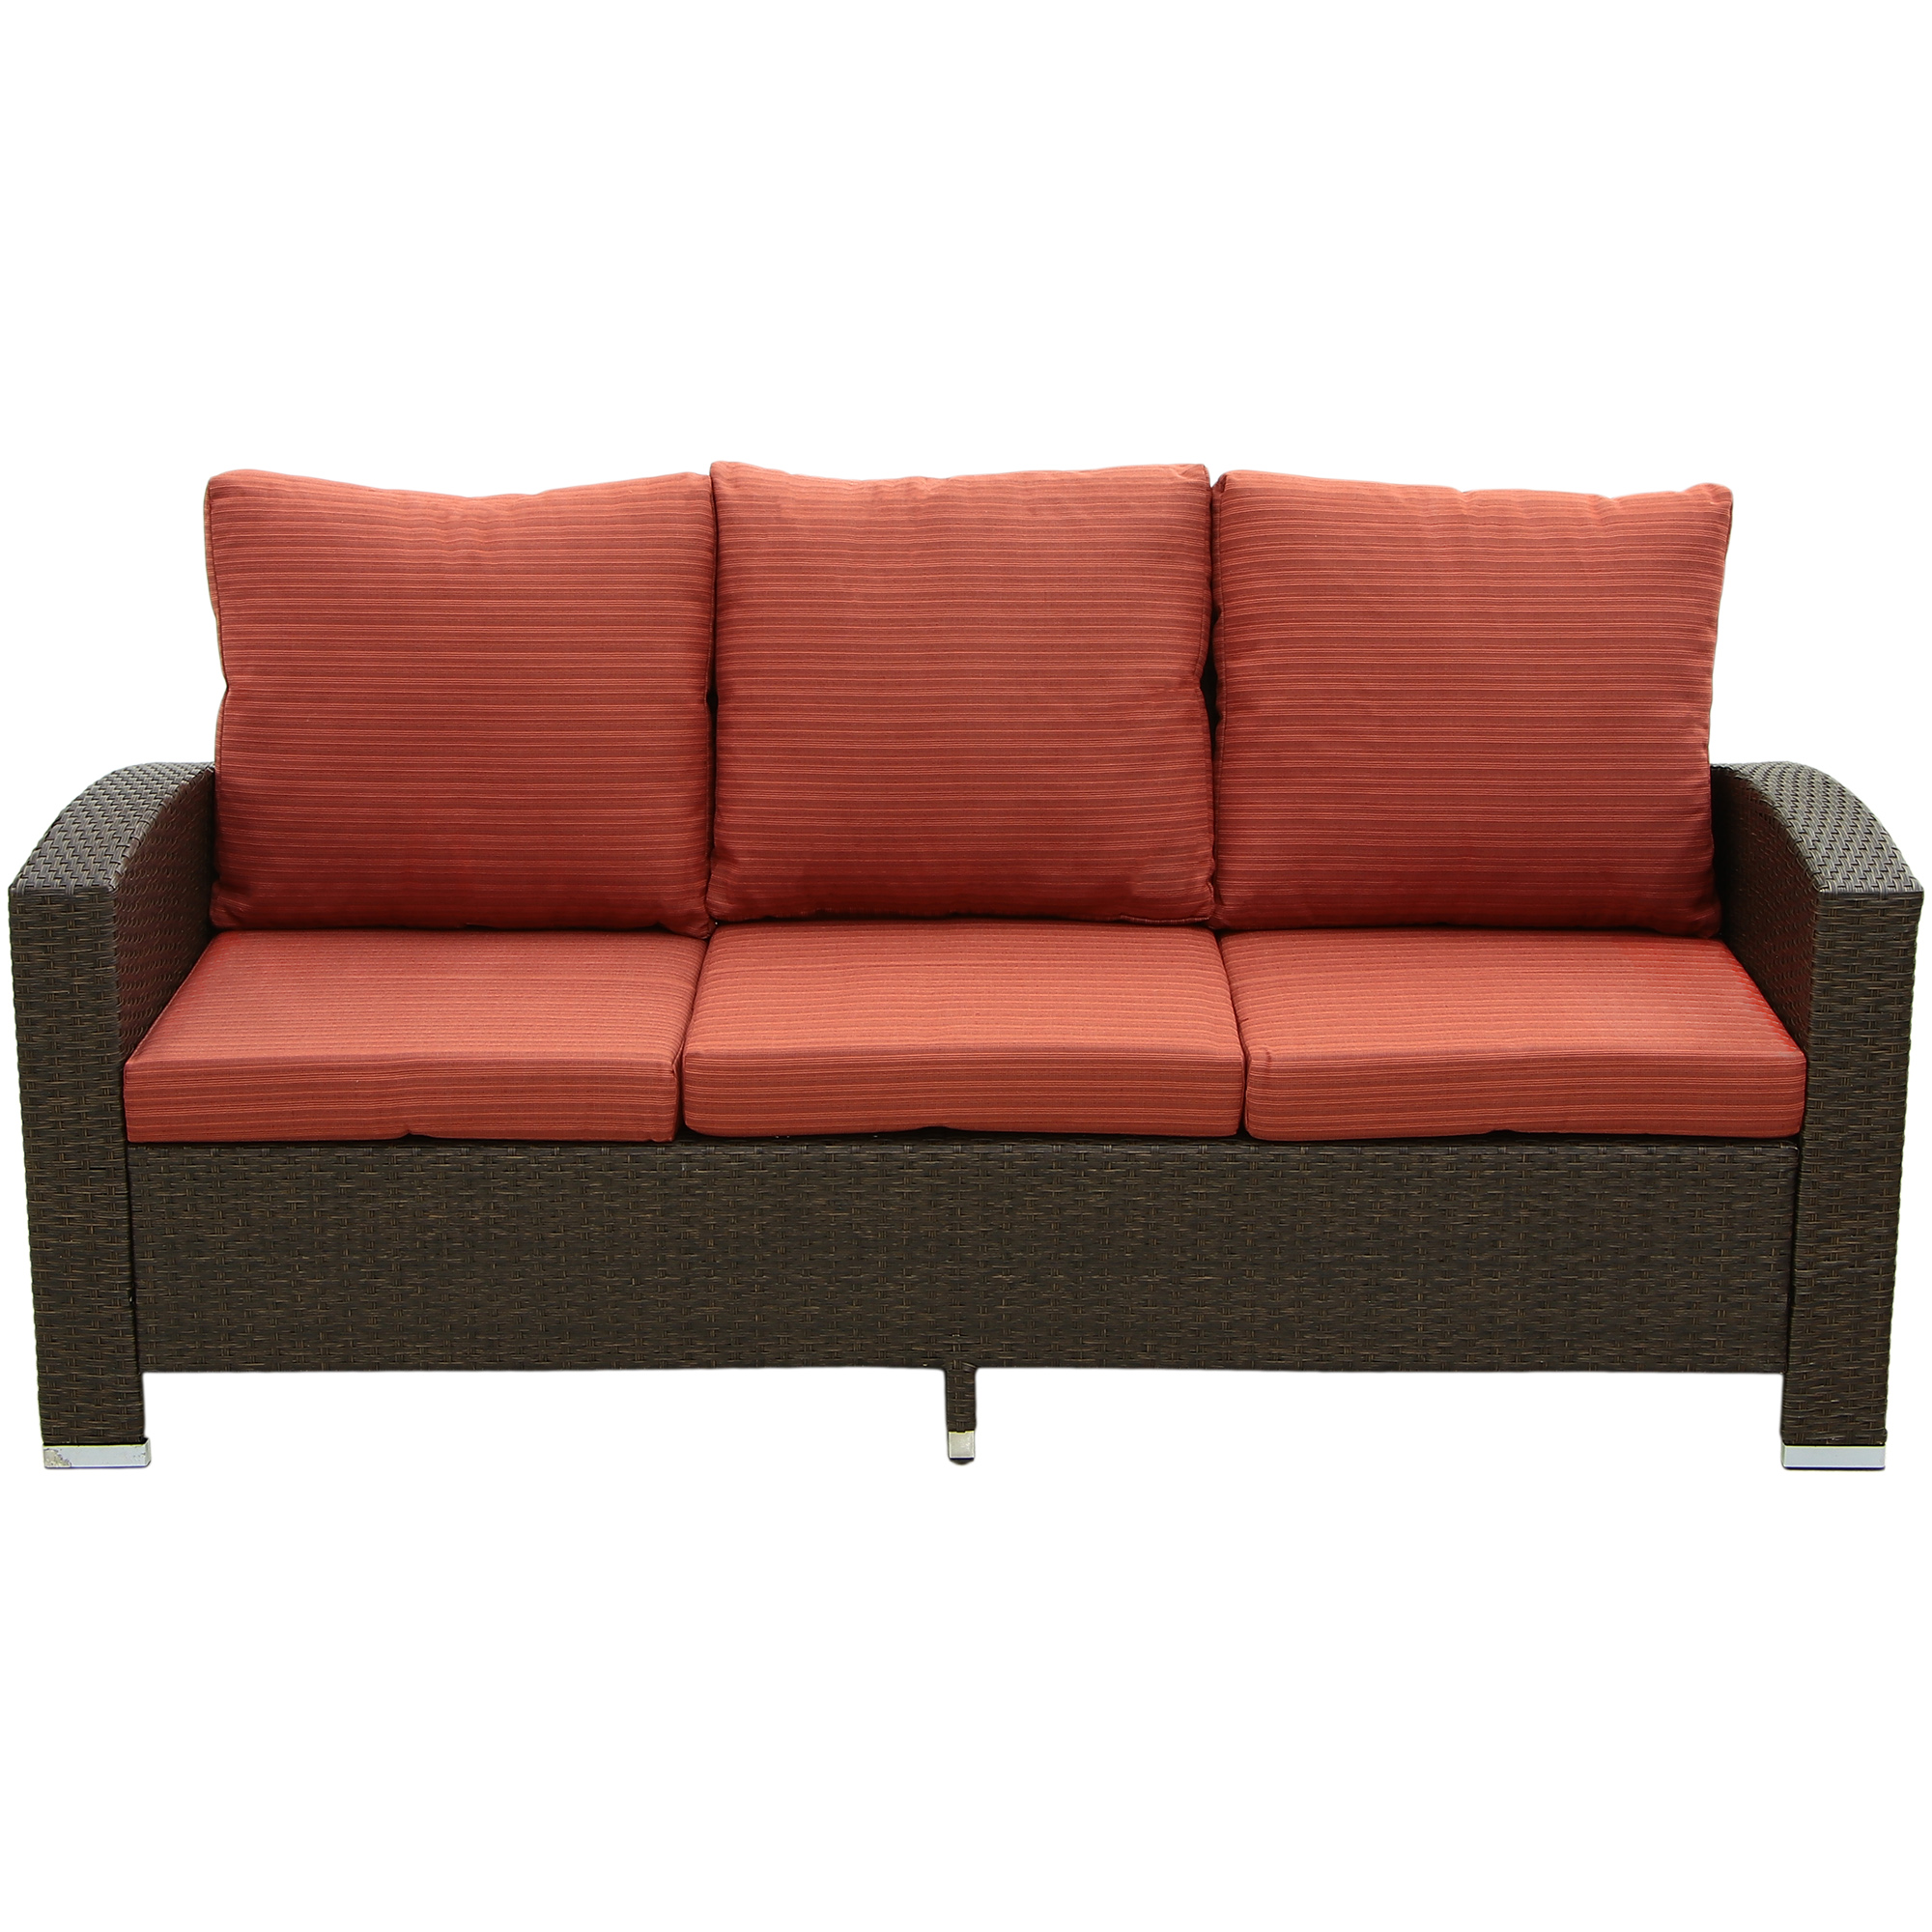 Комплект мебели Obt 5 предметов, цвет коричневый, размер 180х82х81 см - фото 3